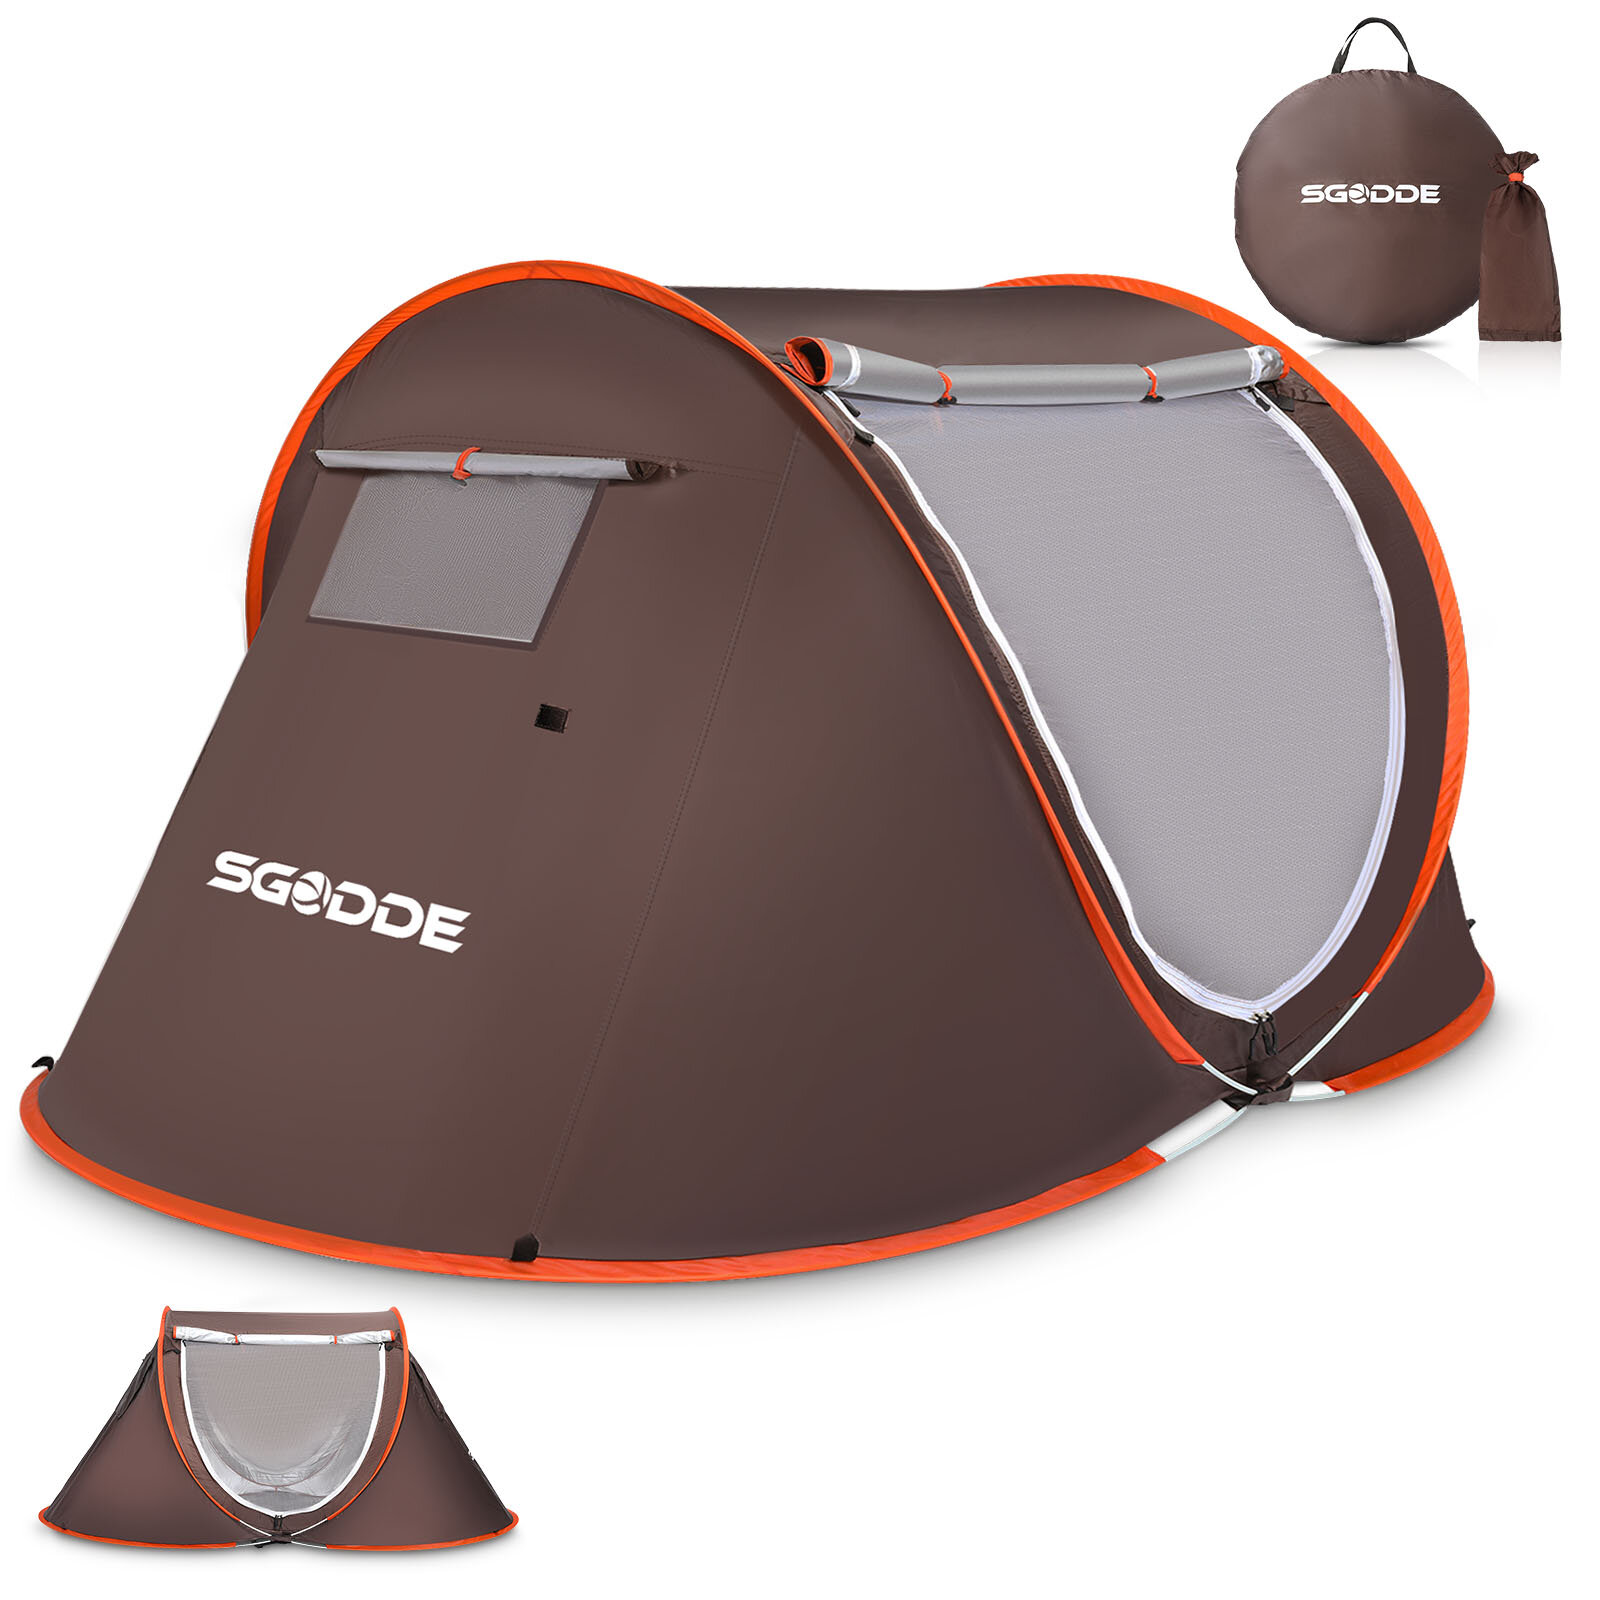 SGODDE 2-3 persone Tenda Automatica campeggio Tenda Anti UV Tenda da sole Tenda da sole impermeabile per esterni